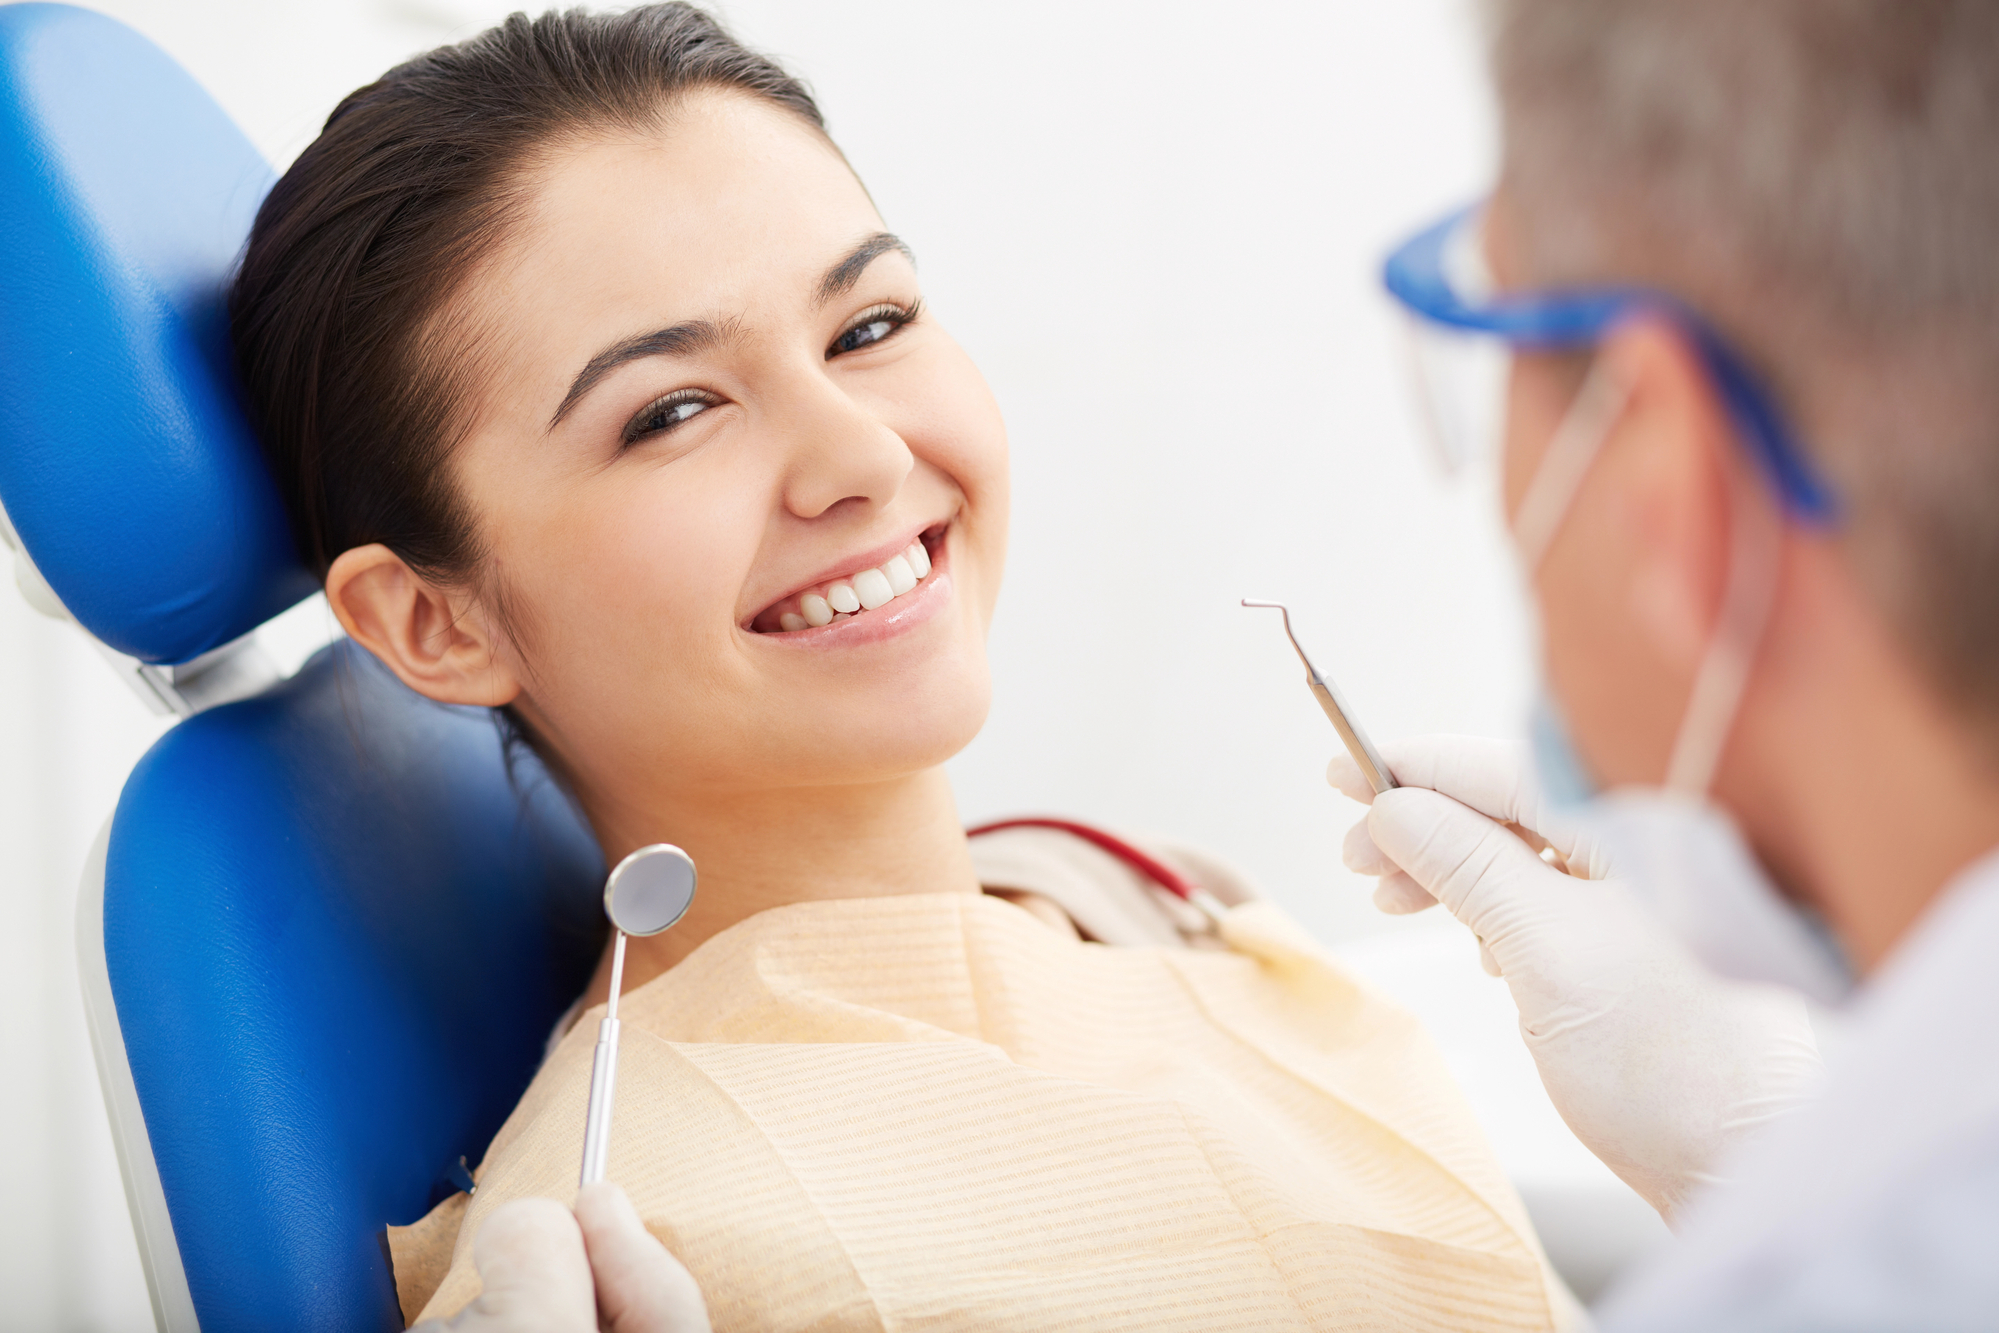 How long do dental fillings last on average?